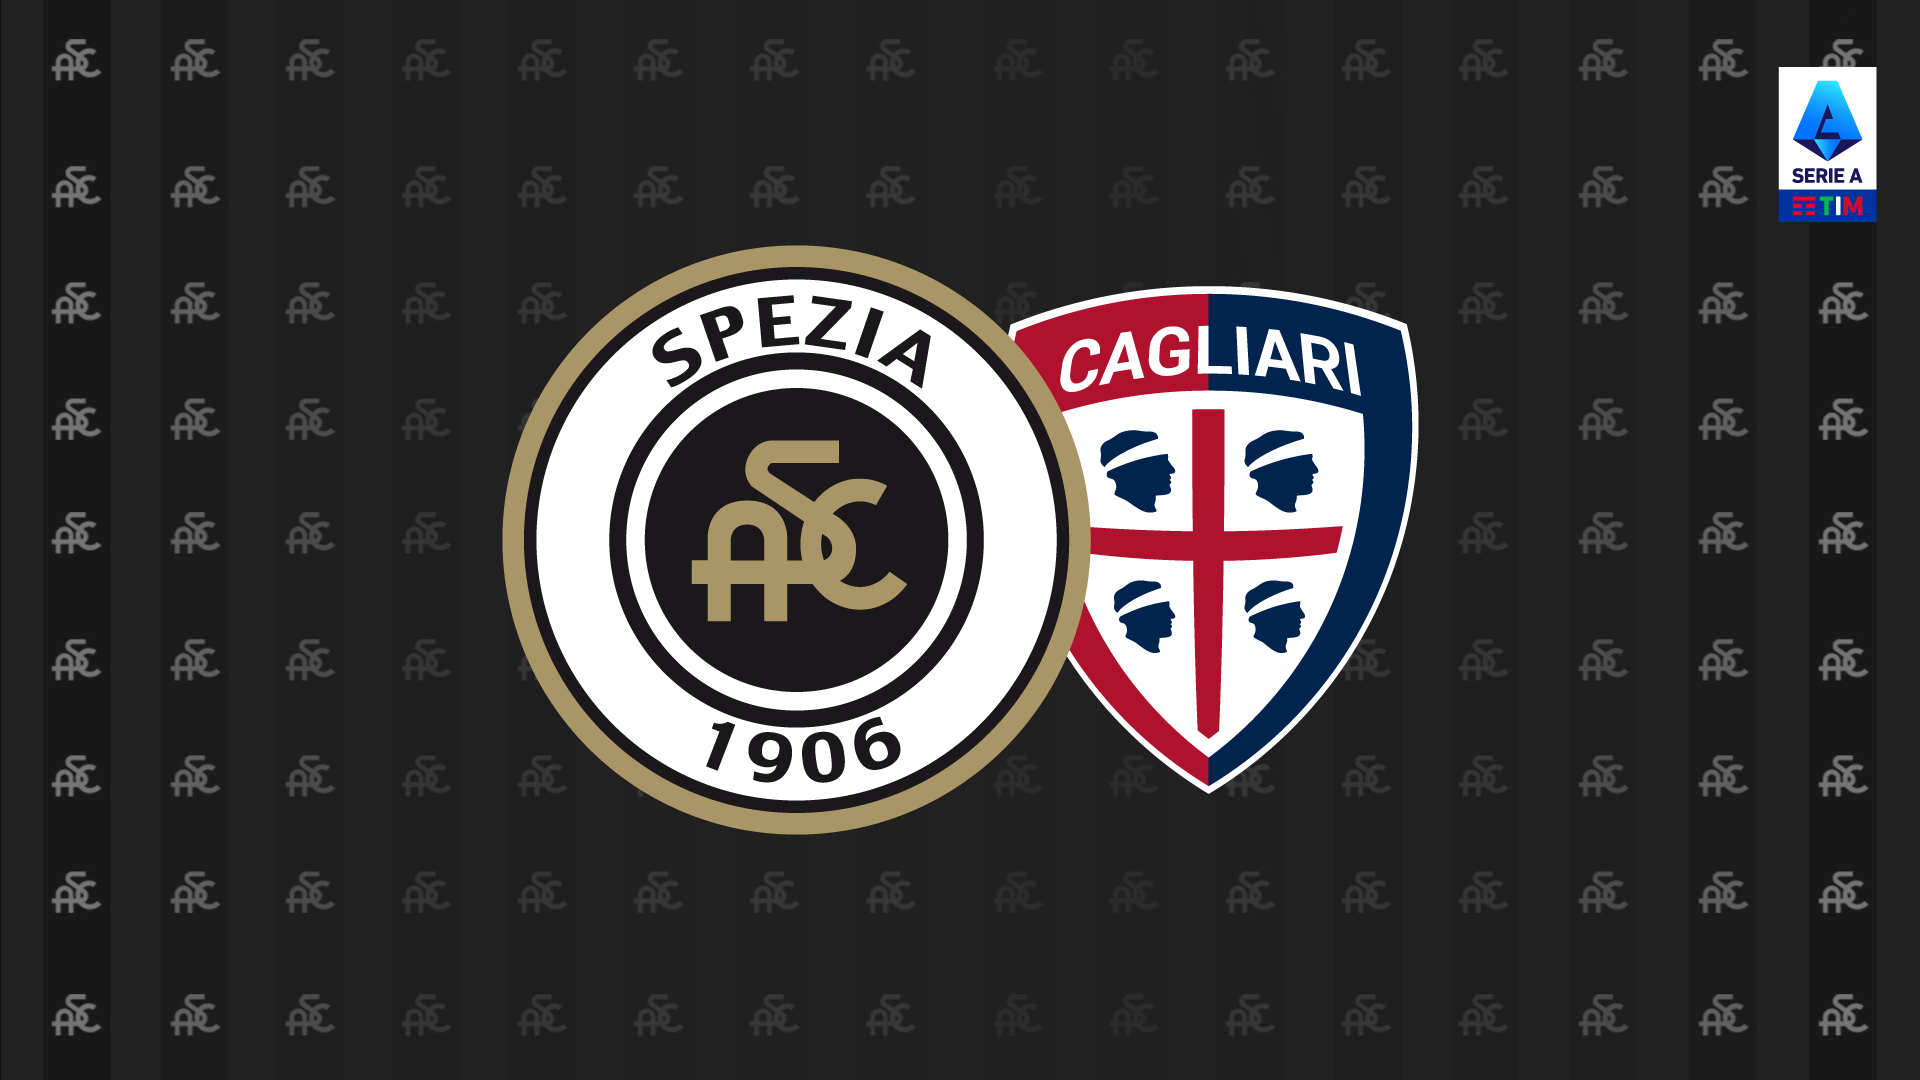 Serie A TIM 21/22: Spezia-Cagliari 2-0